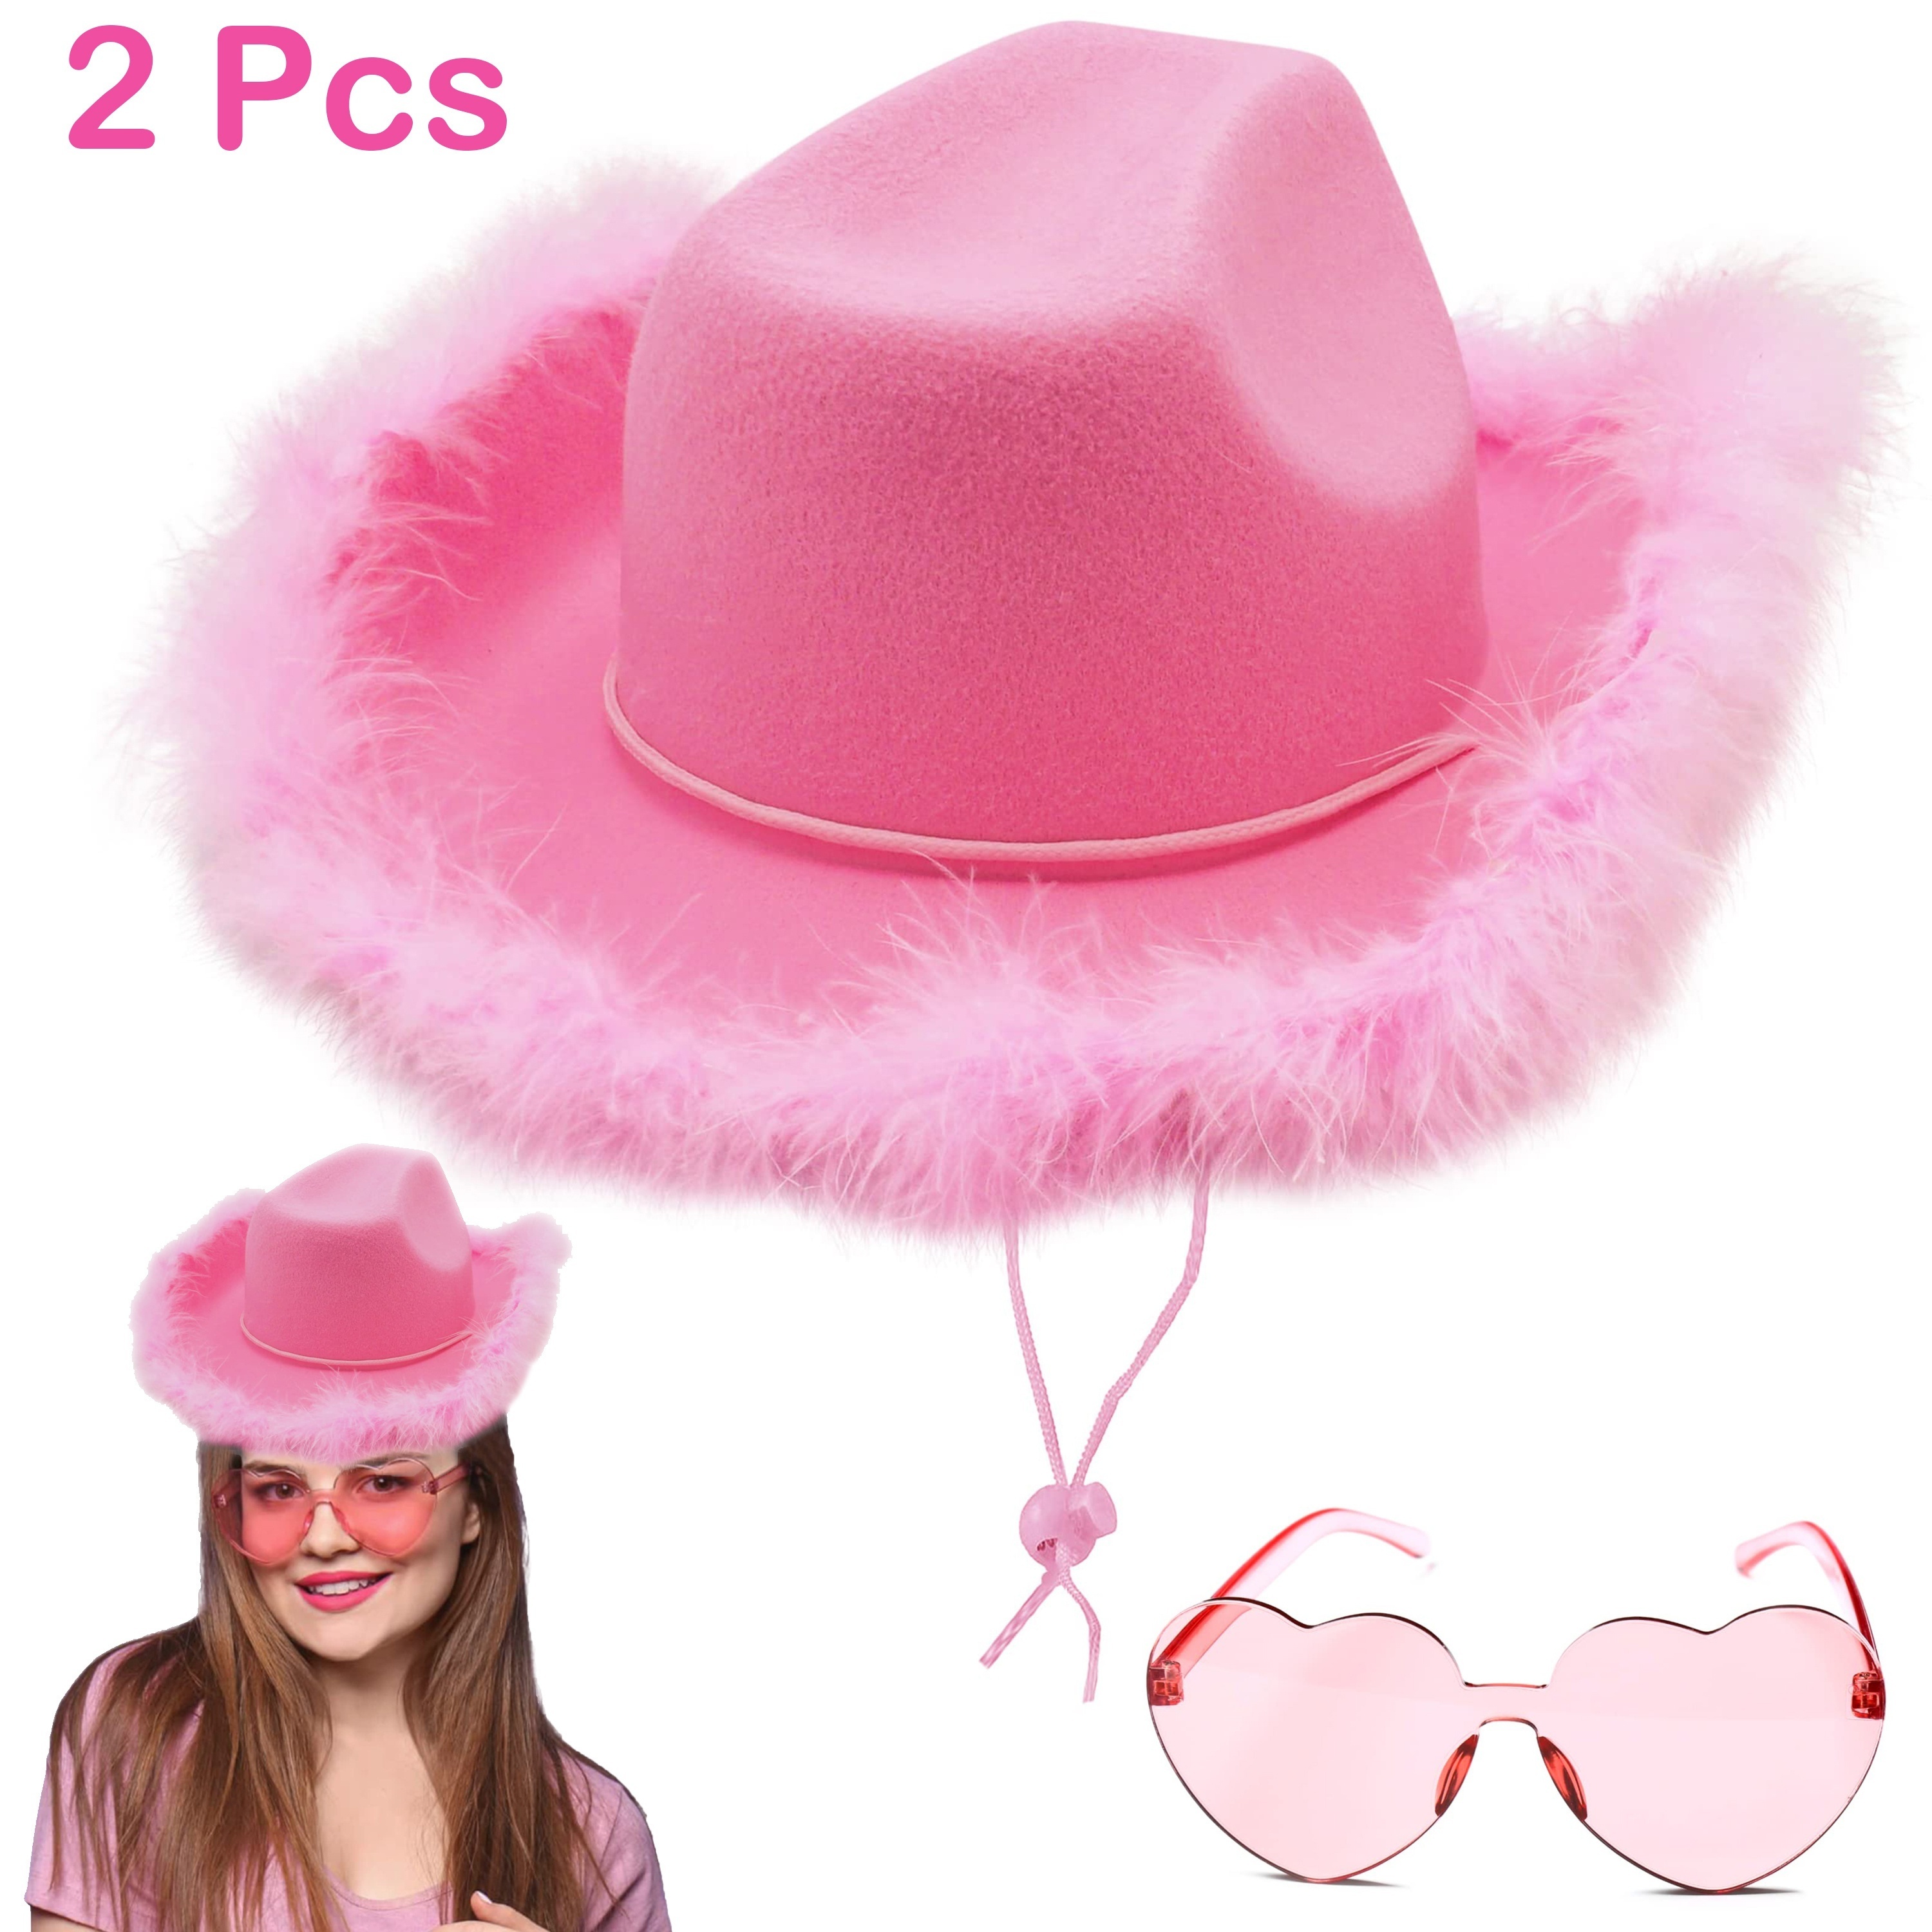 Hochwertiger pinker Cowboy Hut für Karneval / Festival